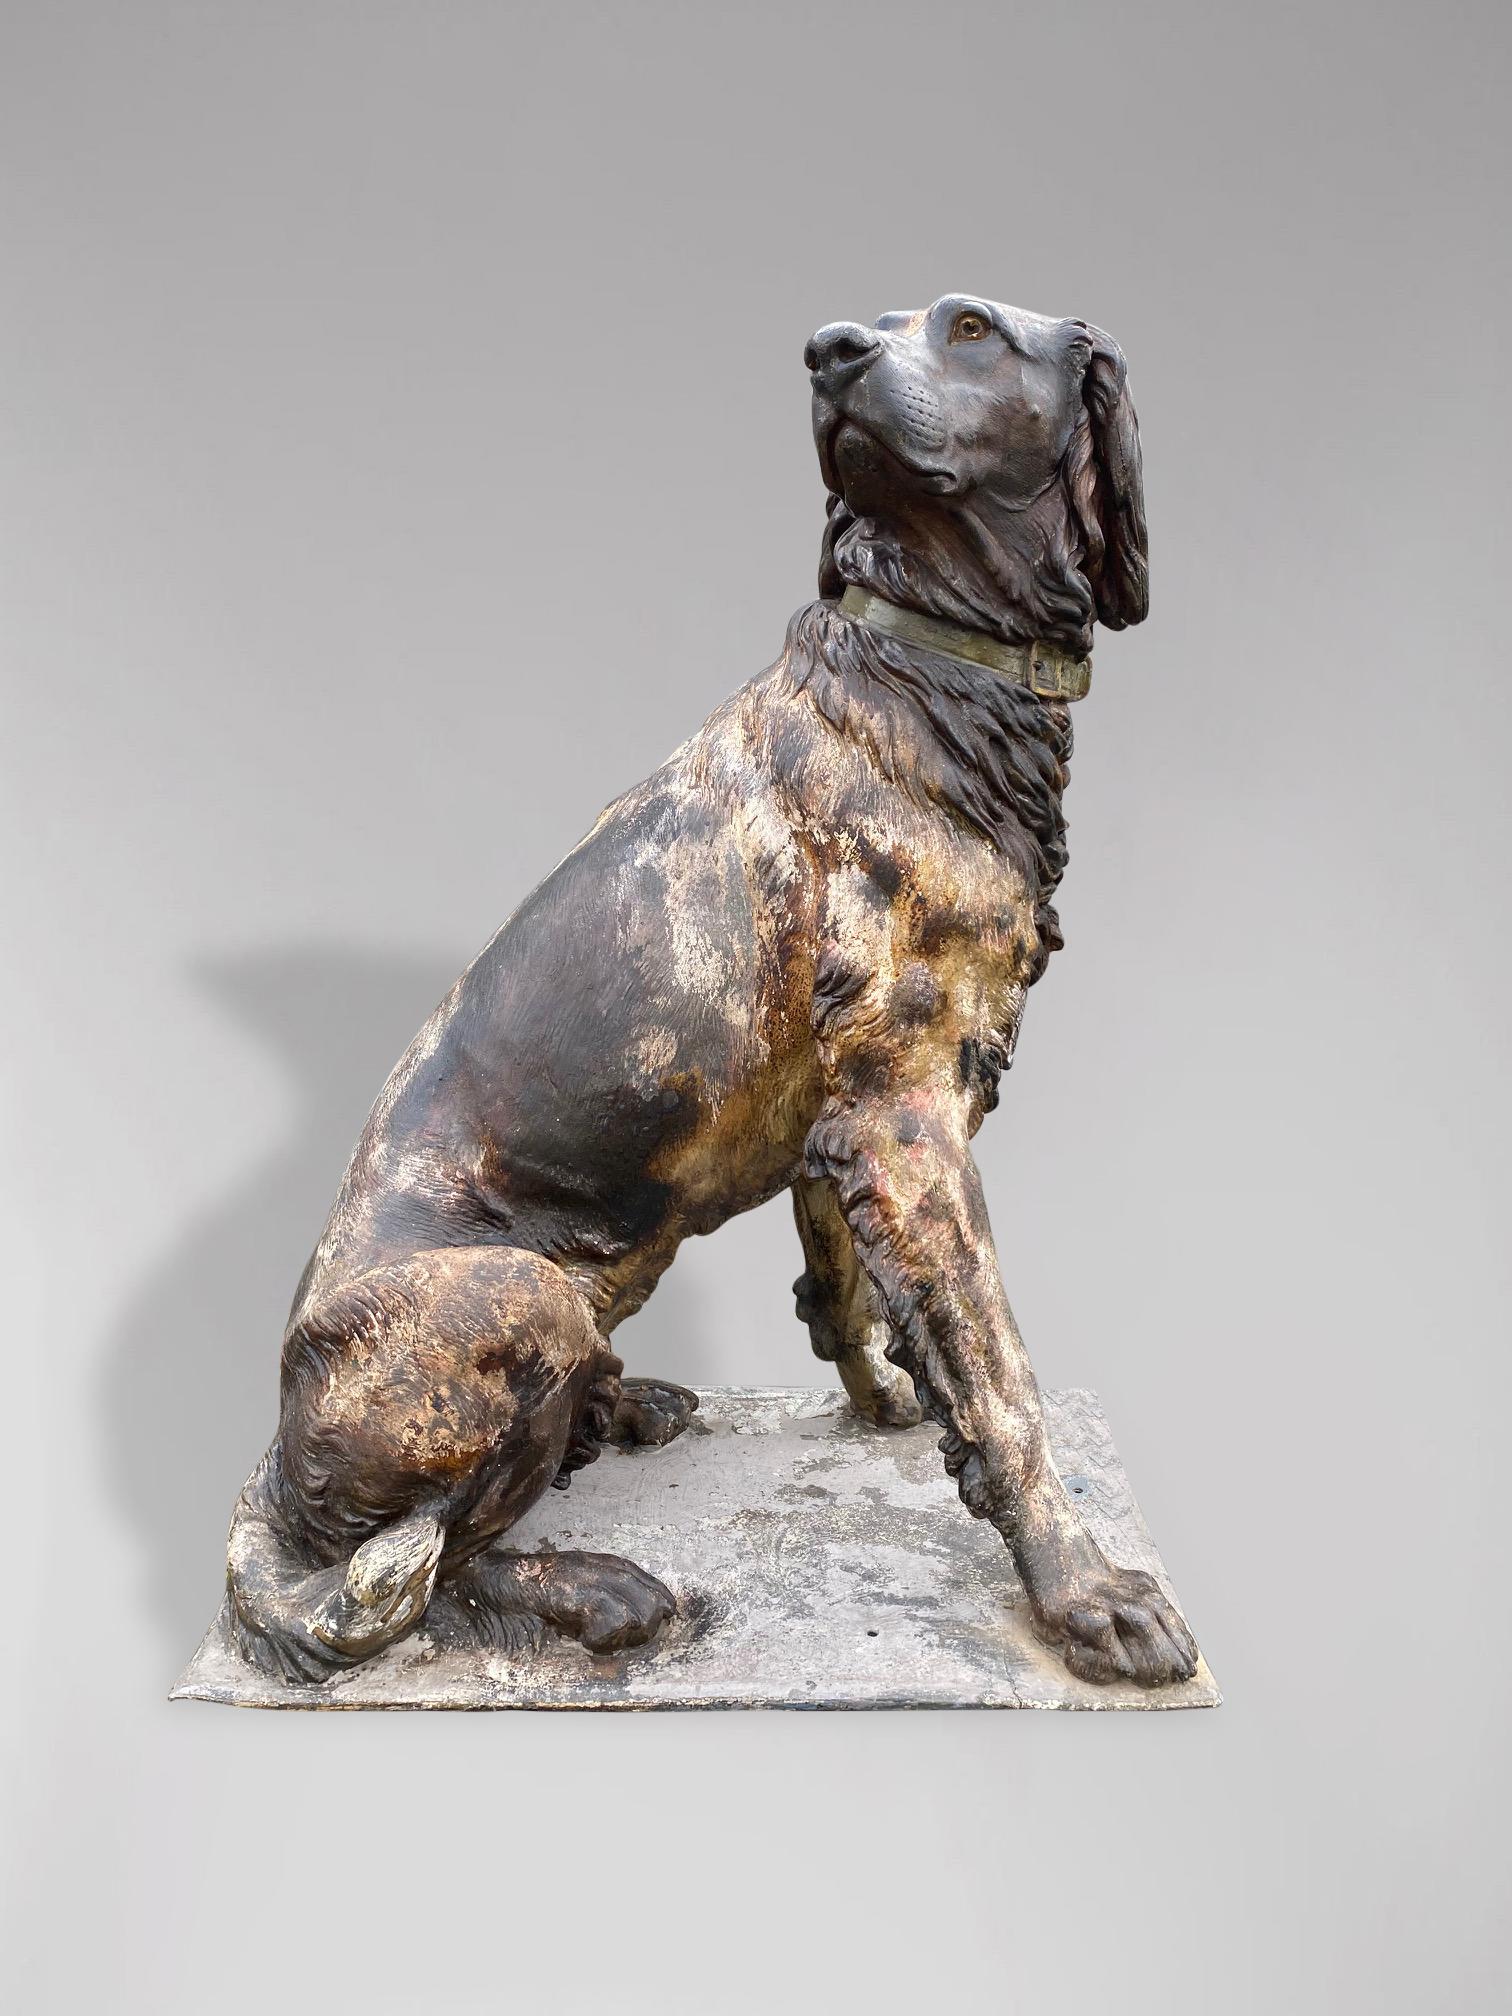 Superbe statue en fonte grandeur nature du début du 20e siècle représentant un chien de chasse de type Spaniel ou Munster. Une très belle statue, reposant sur un socle, entièrement tridimensionnelle et belle de tous les côtés. Allemand. Qualité